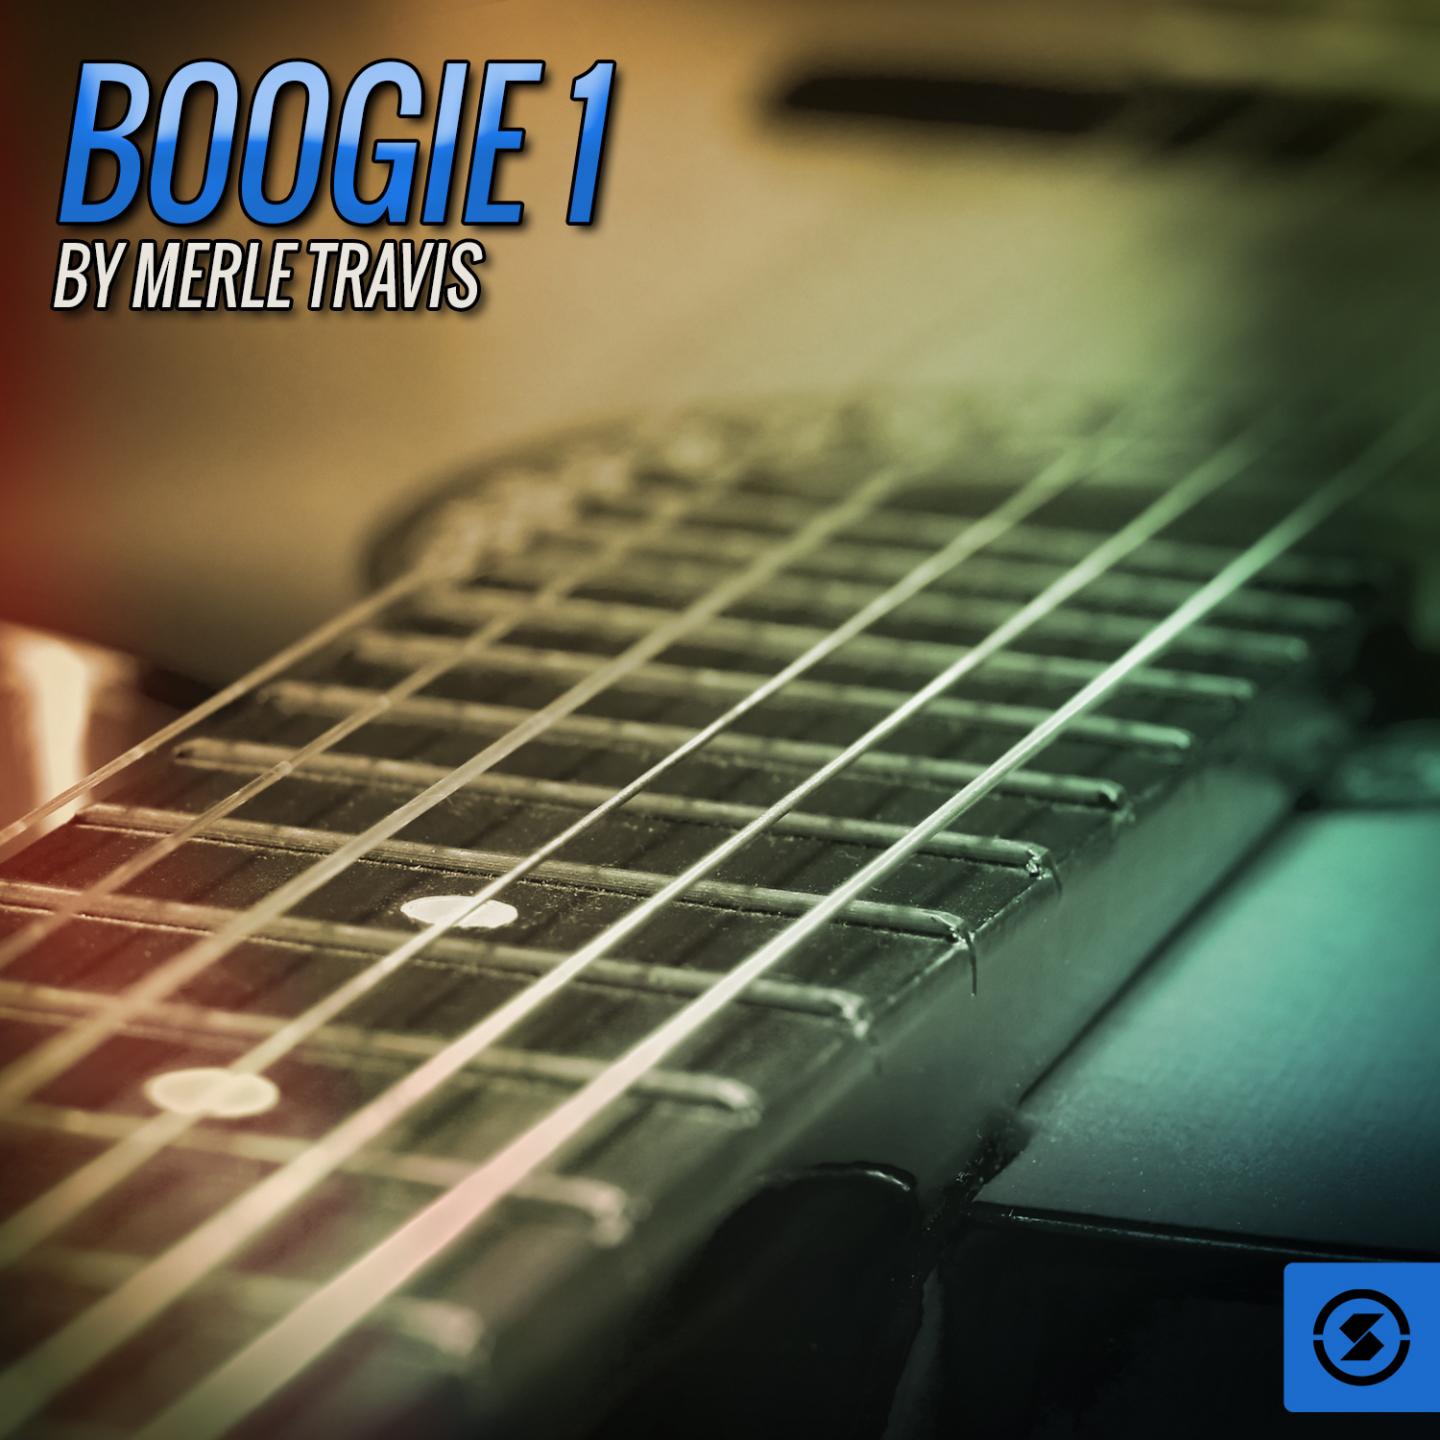 Boogie 1 by Merle Travis